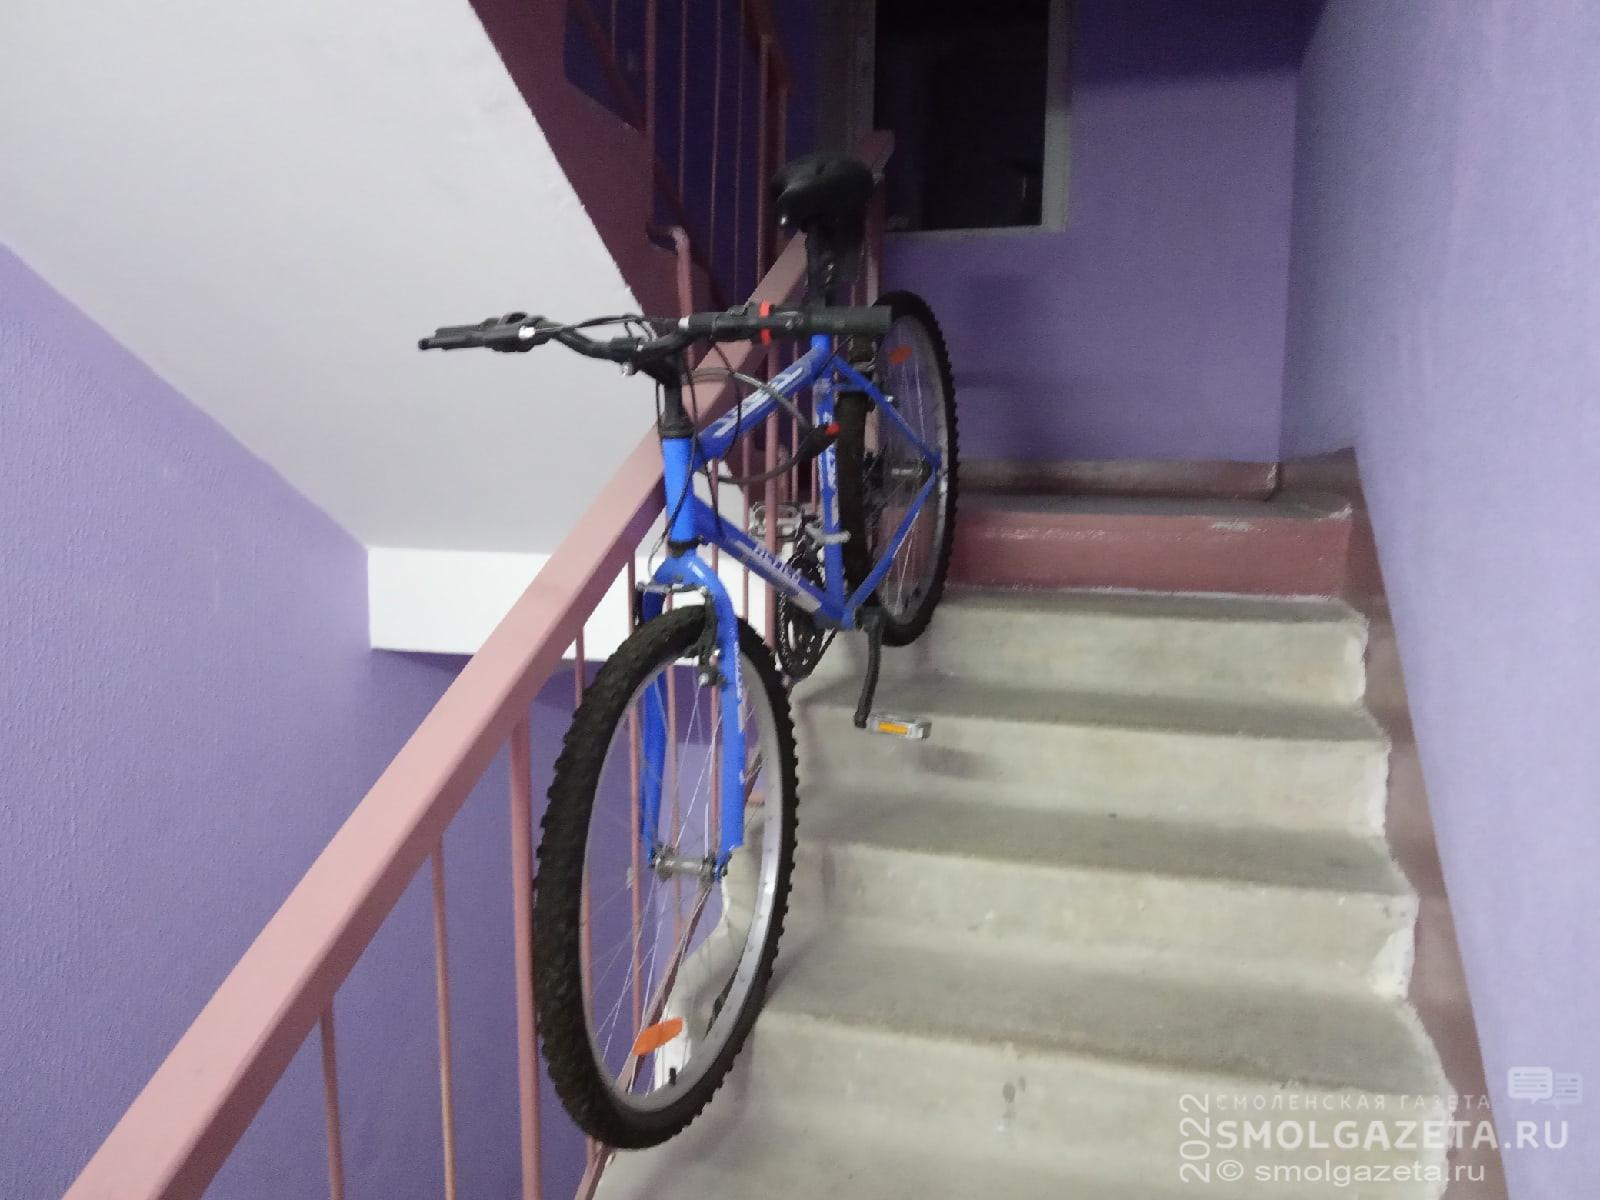 В Гагарине ночью из подъезда дома украли велосипед стоимостью 17 тысяч рублей